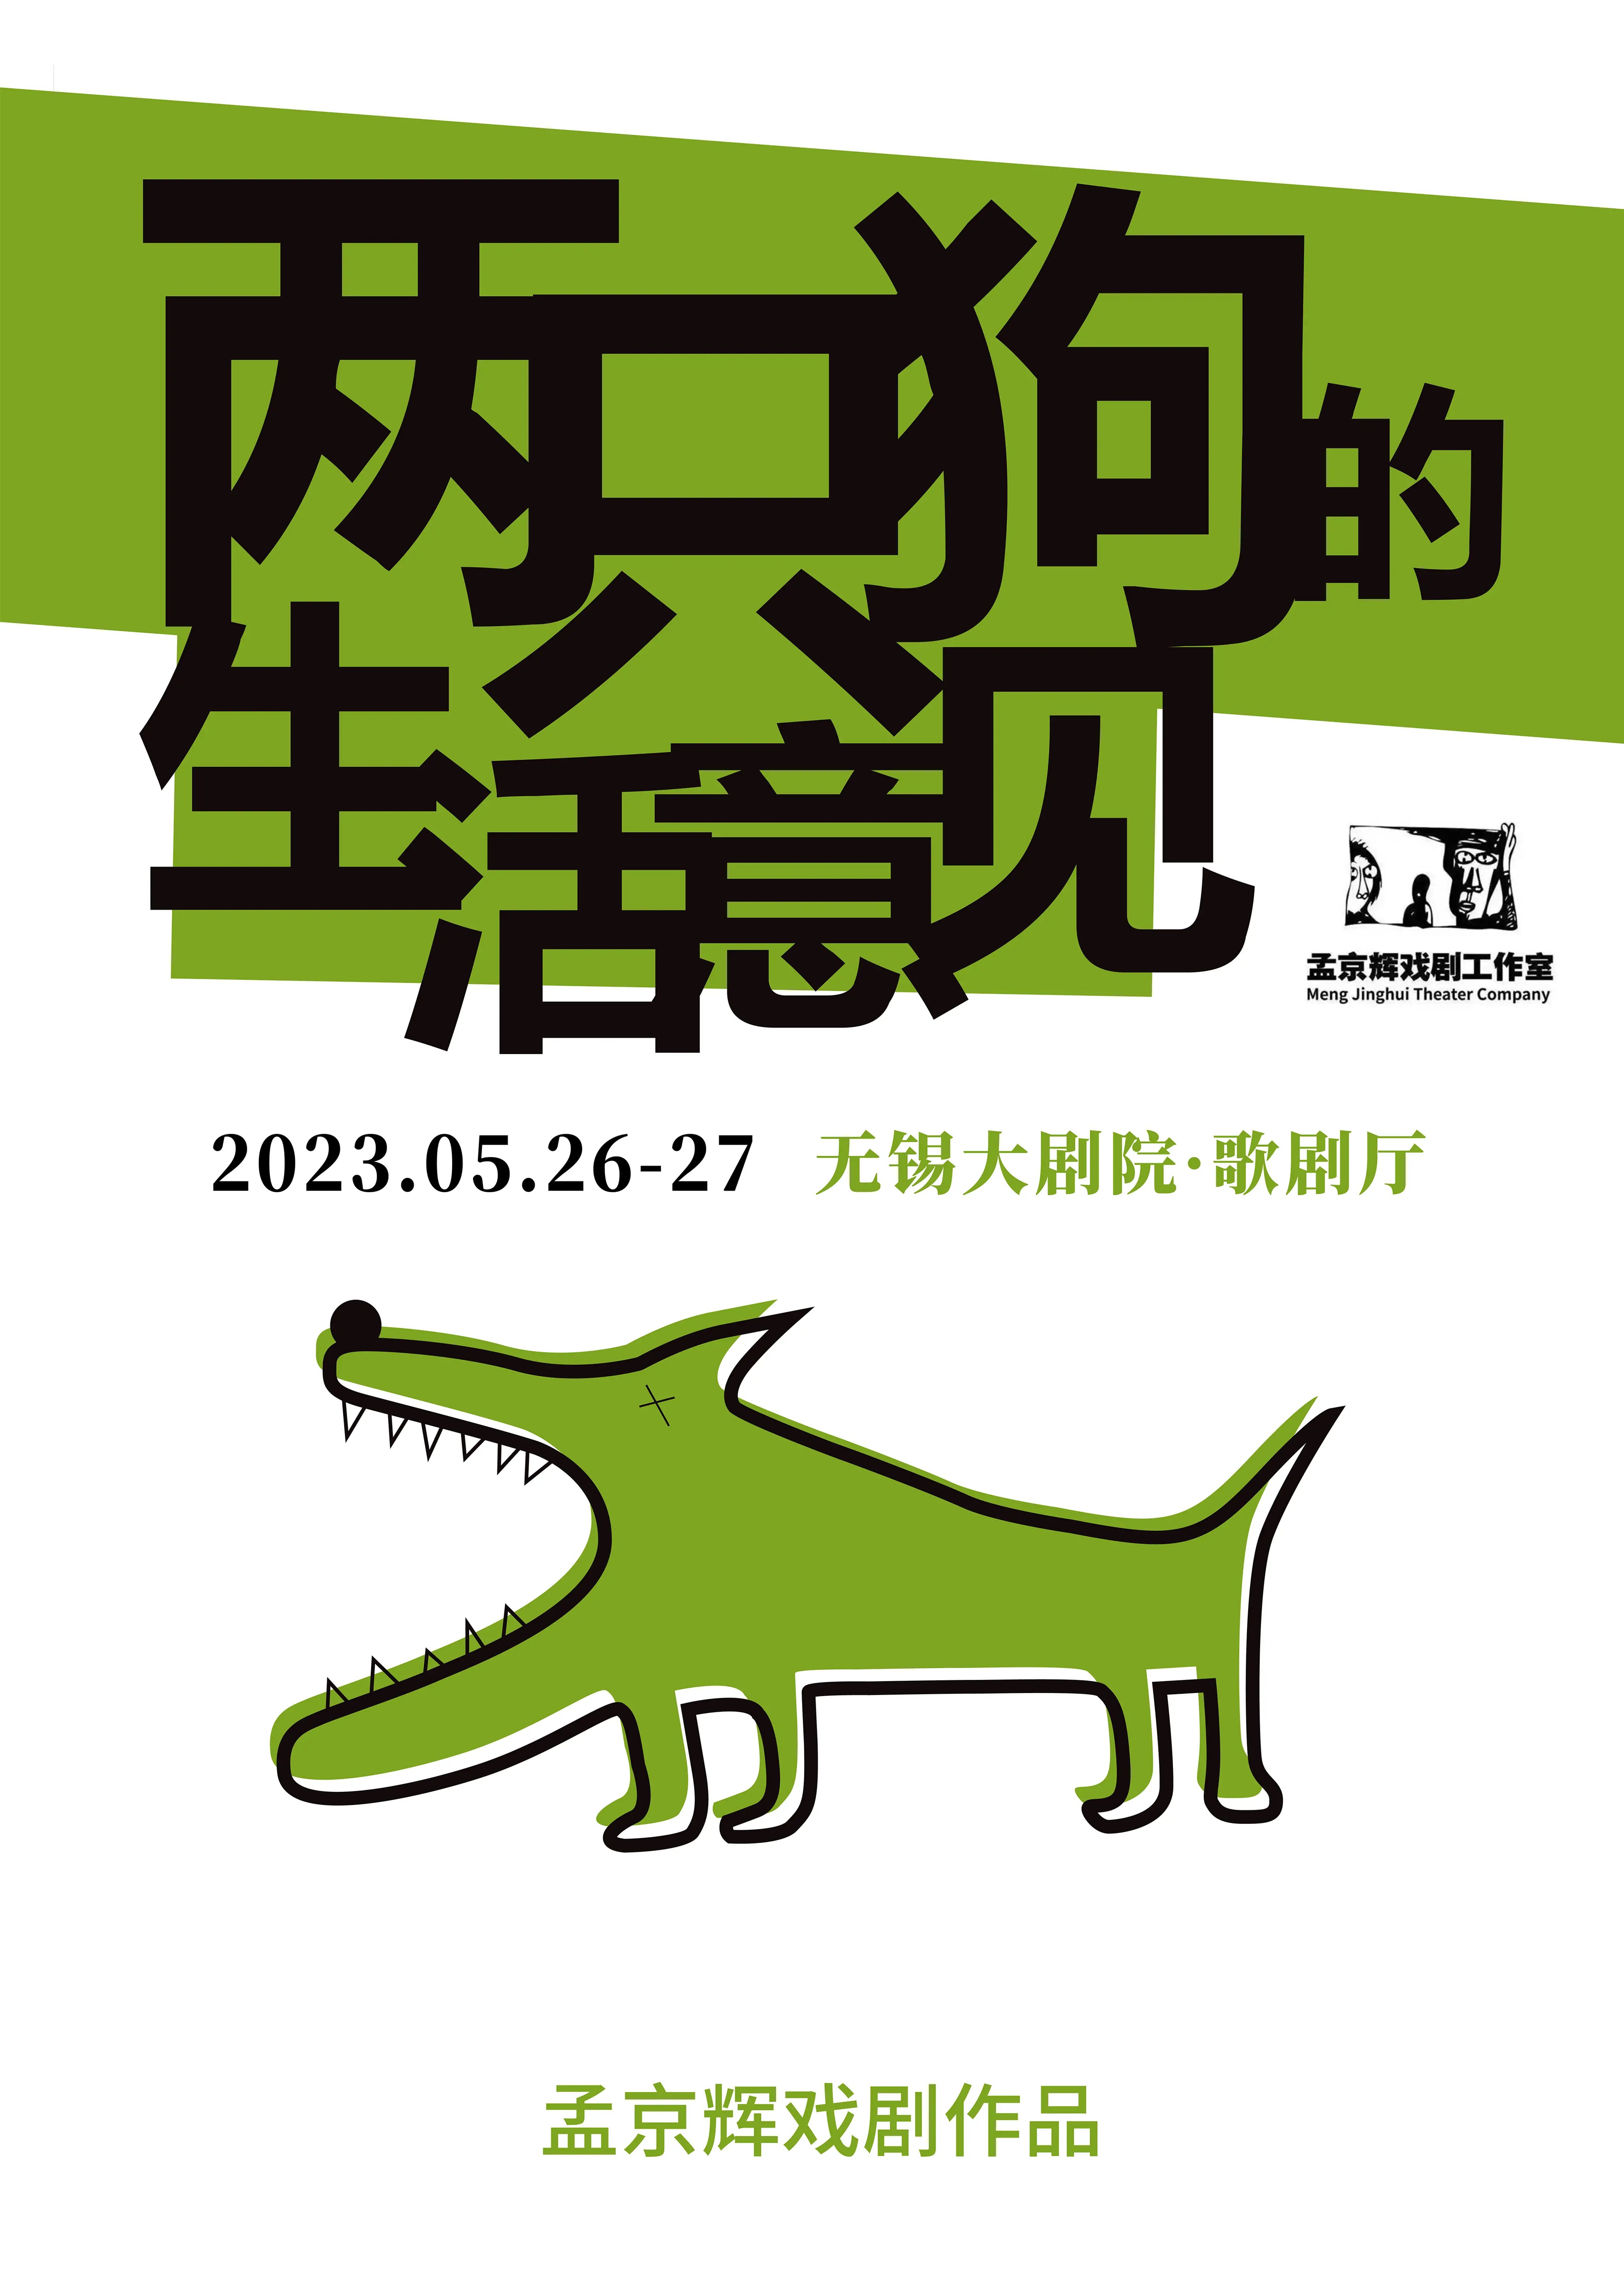 【无锡】孟京辉戏剧作品《两只狗的生活意见》无锡站